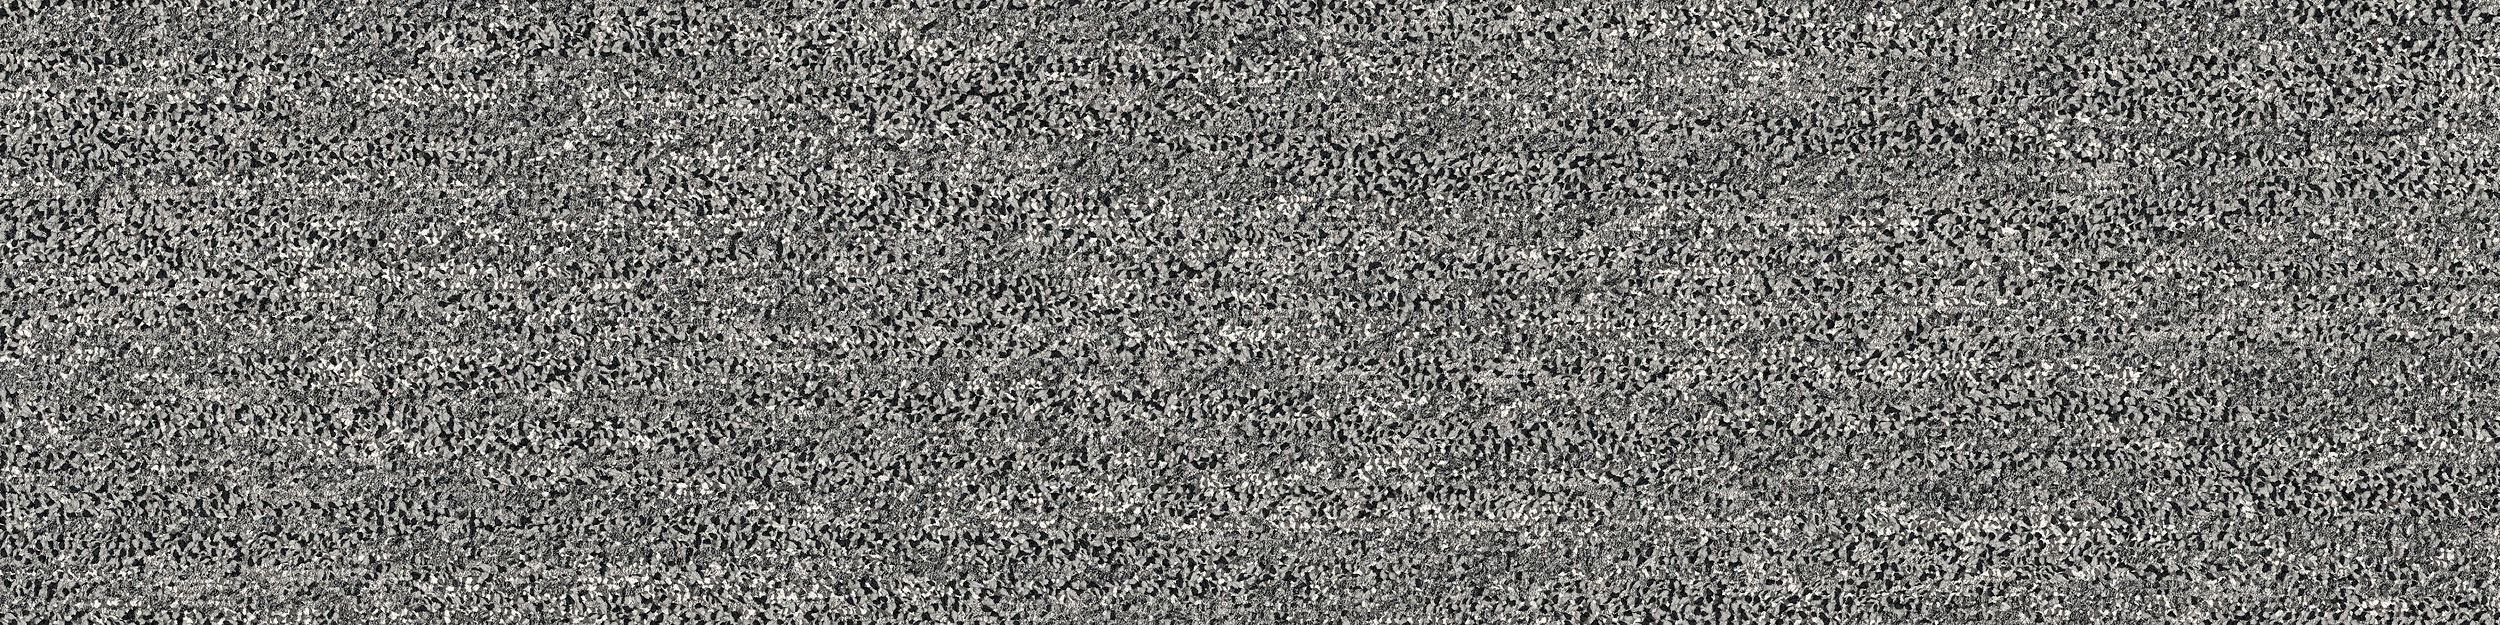 Mantle Rock Carpet Tile In Grey Stone image number 2